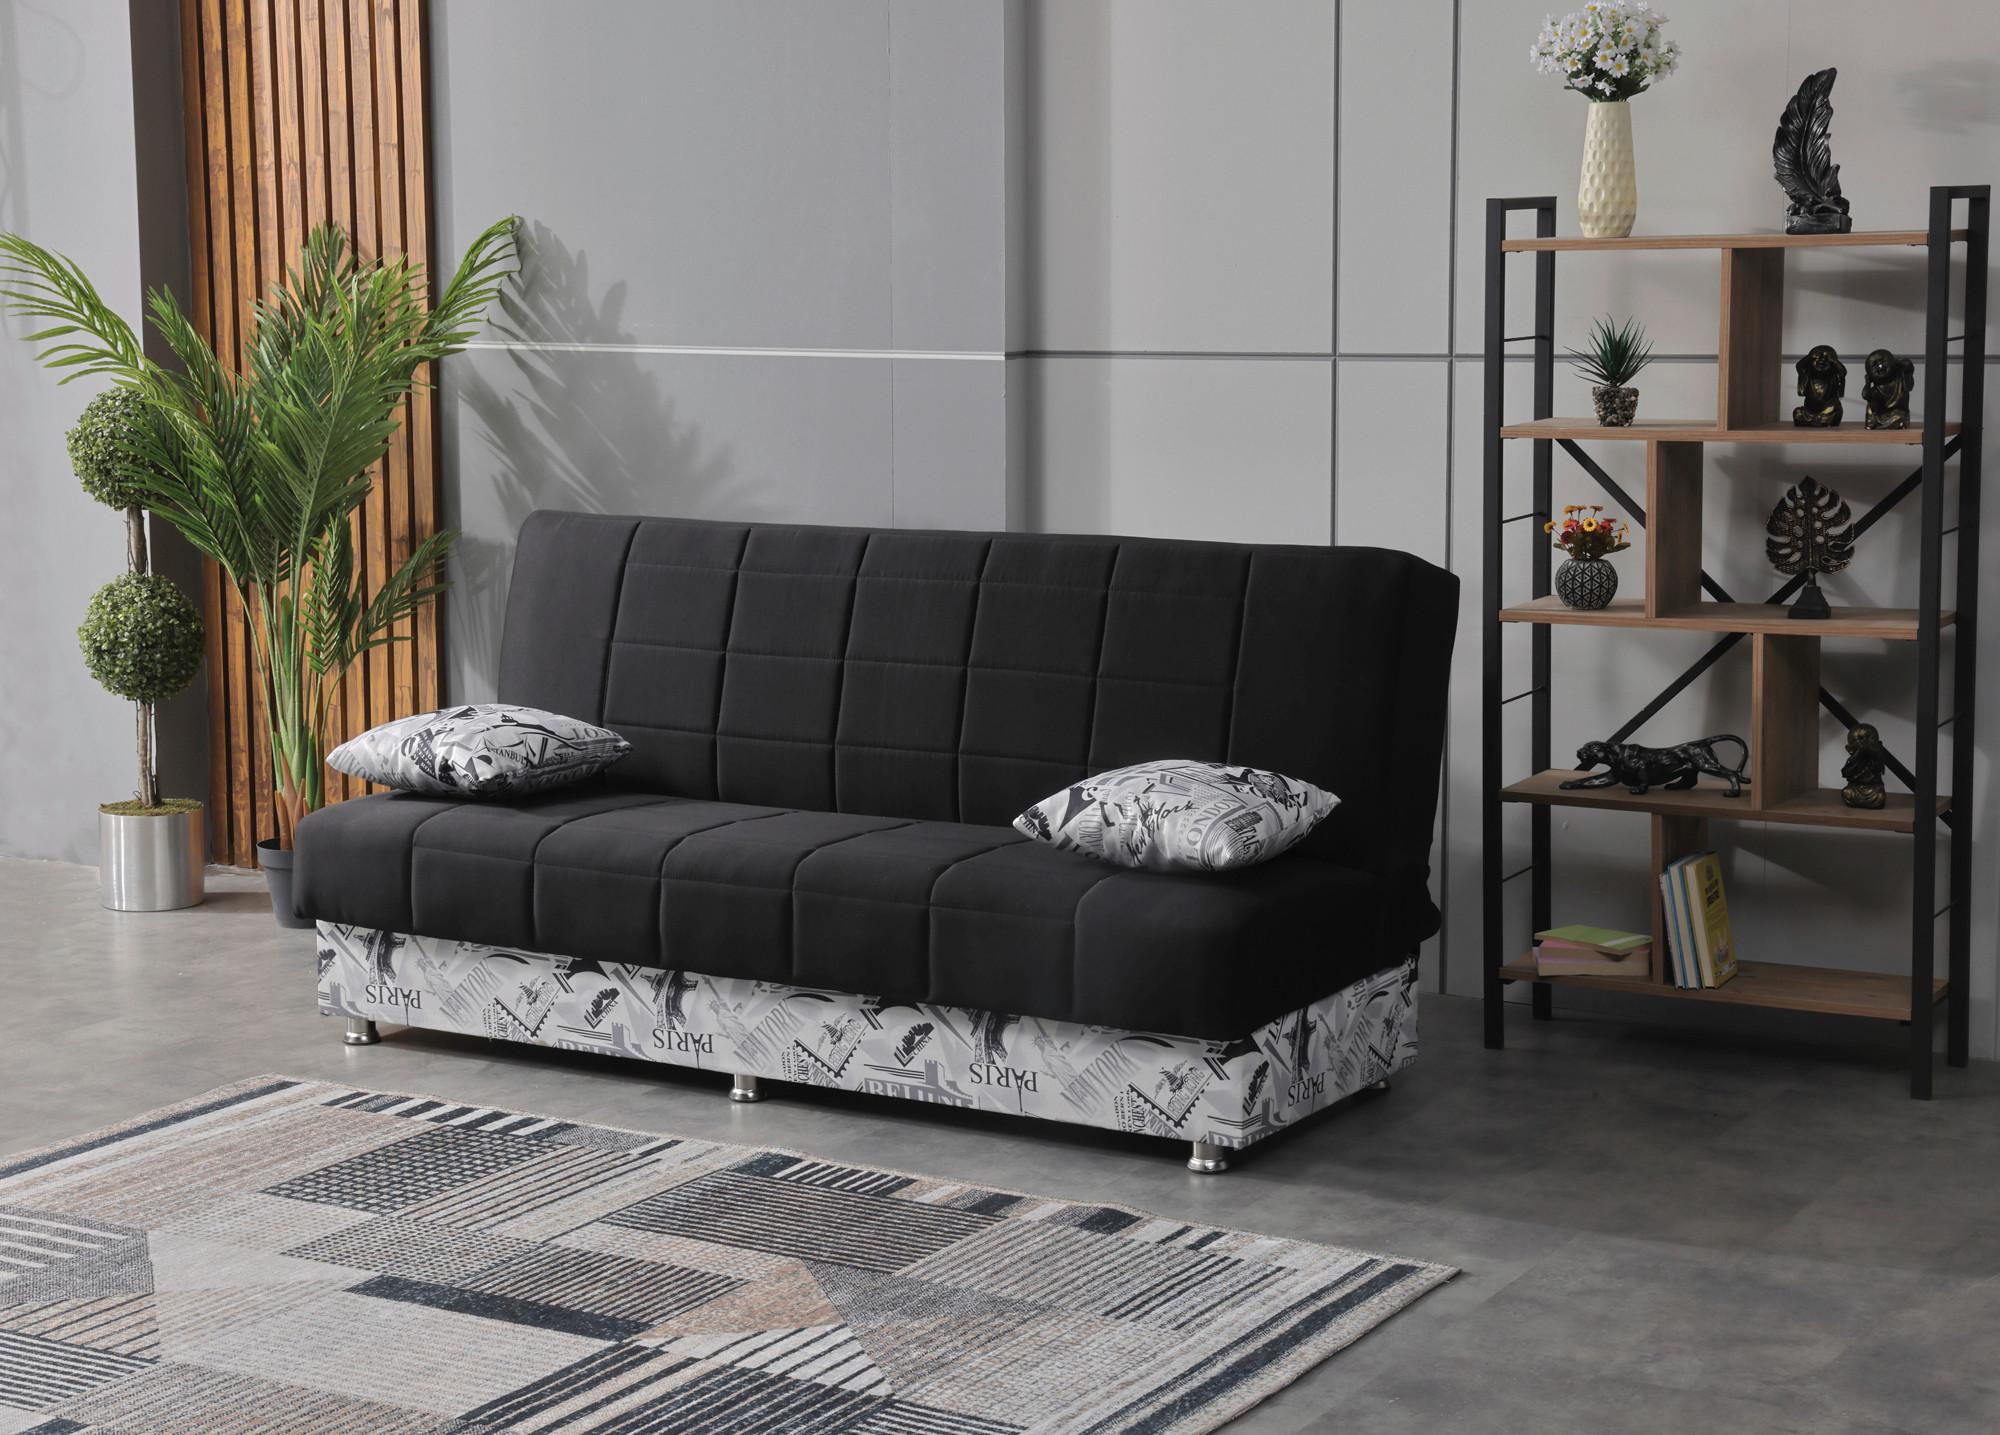 3-Sitzer-Sofa Chicago Mit Schlaffunktion Schwarz/Weiß - Chromfarben/Schwarz, Design, Kunststoff/Textil (190/87/87cm) - Livetastic